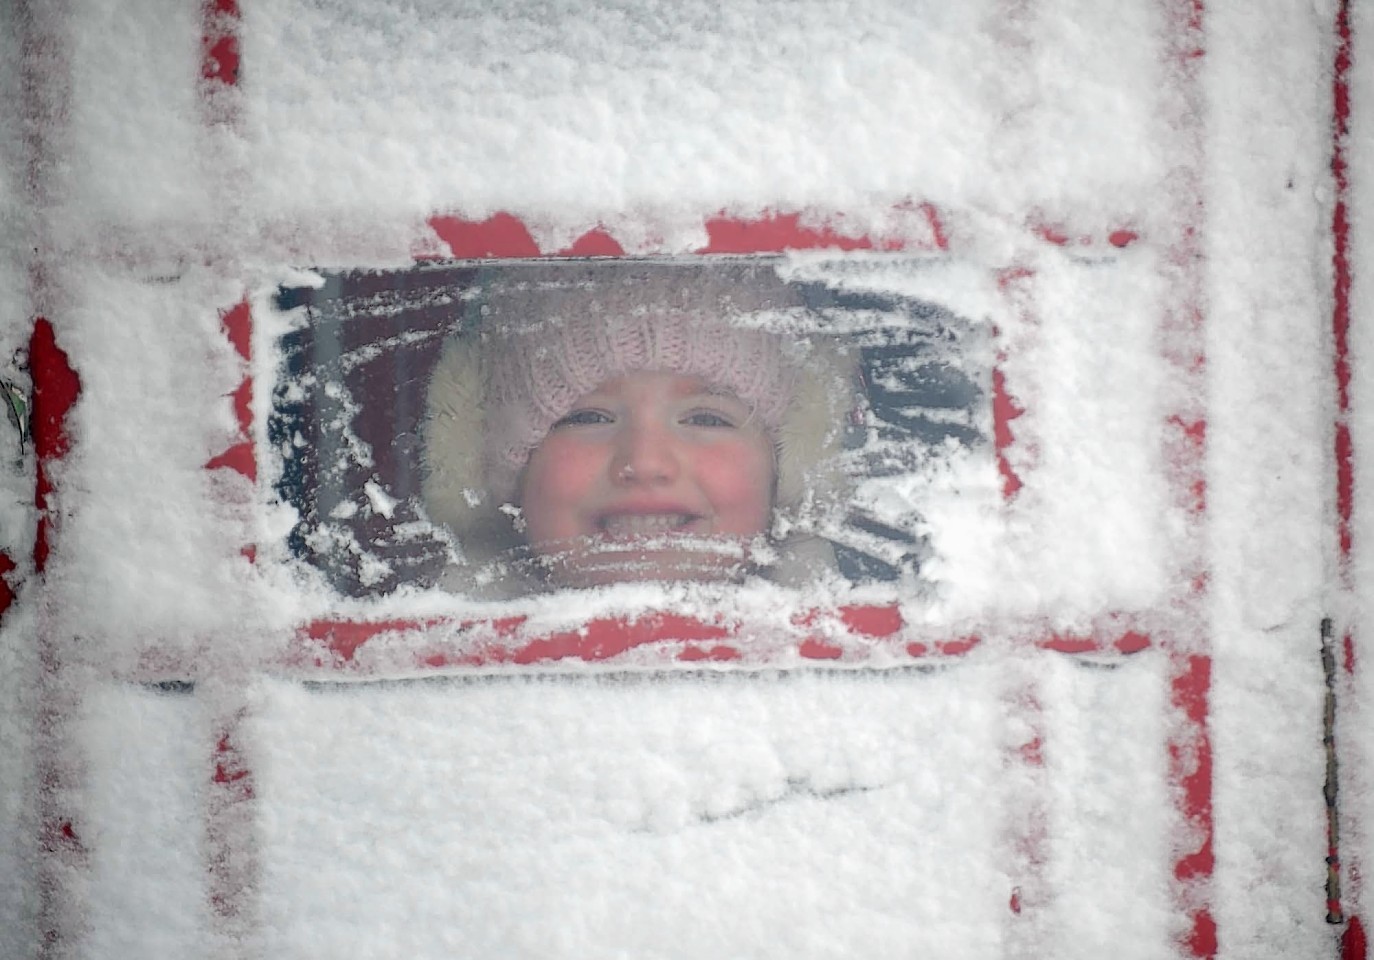 A cheeky face enjoys the snow